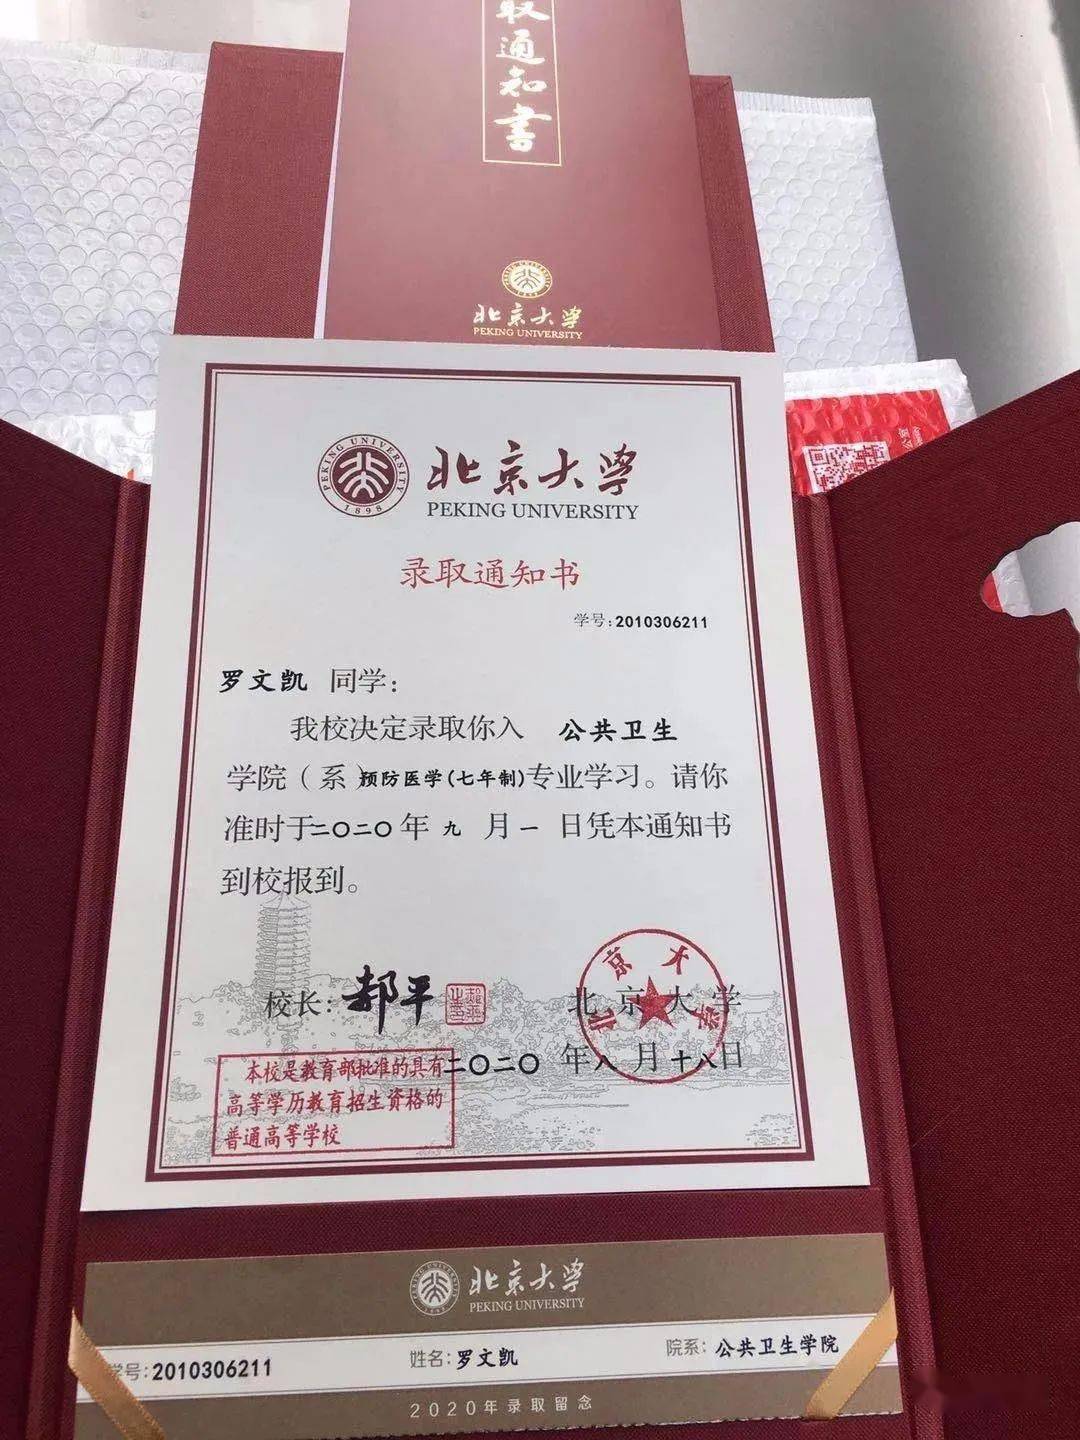 祝贺五华小伙罗文凯拿到北京大学录取通知书